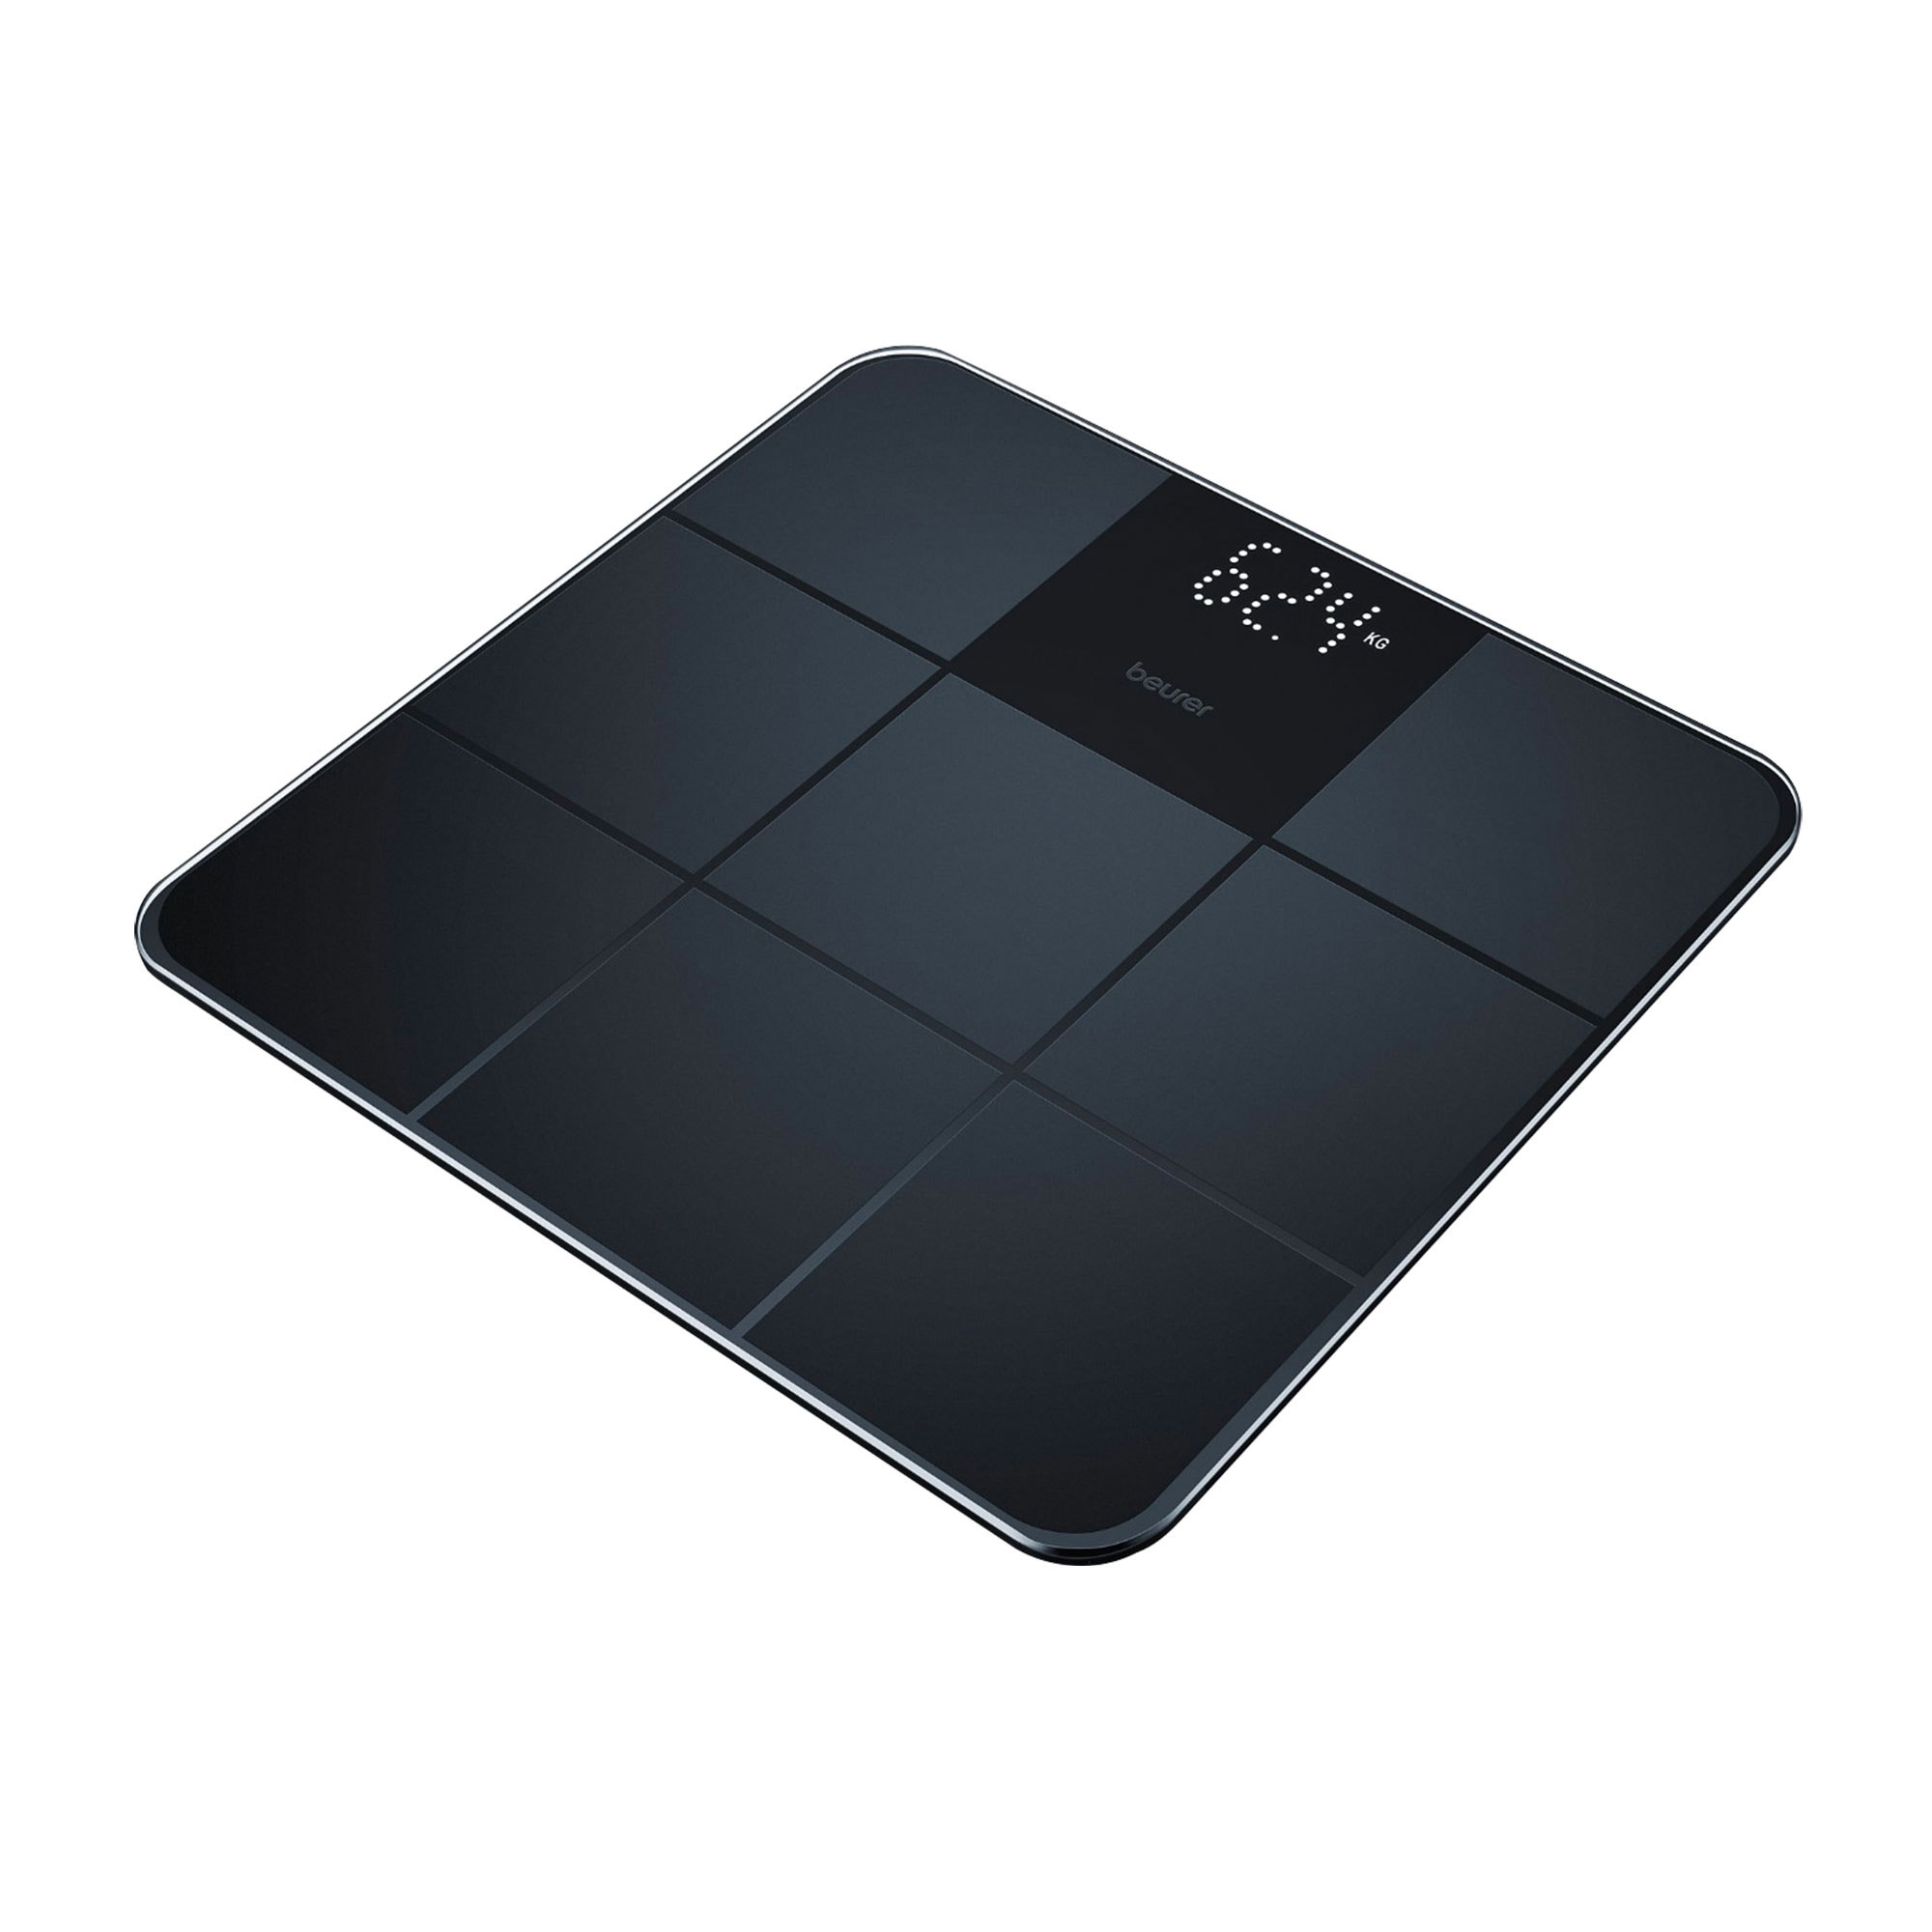 Beurer Digital Glass Bathroom Scale Black Image 1